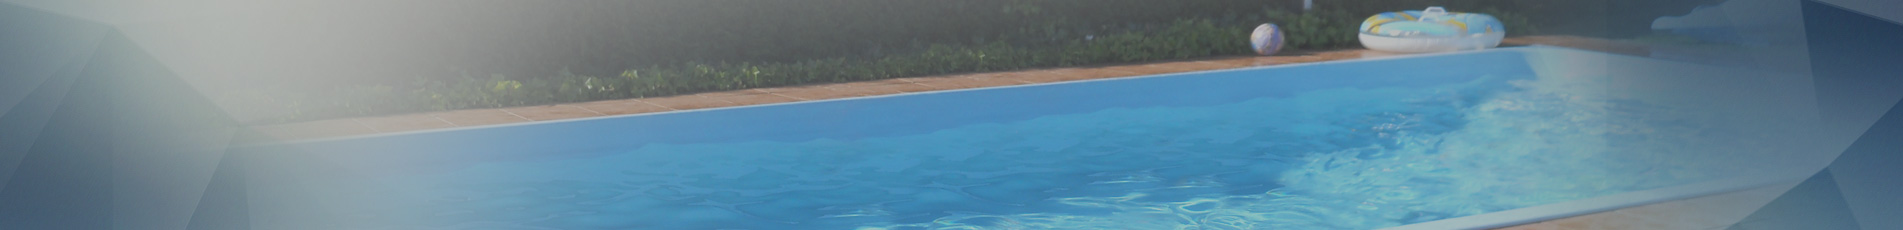 Cabecera piscinas